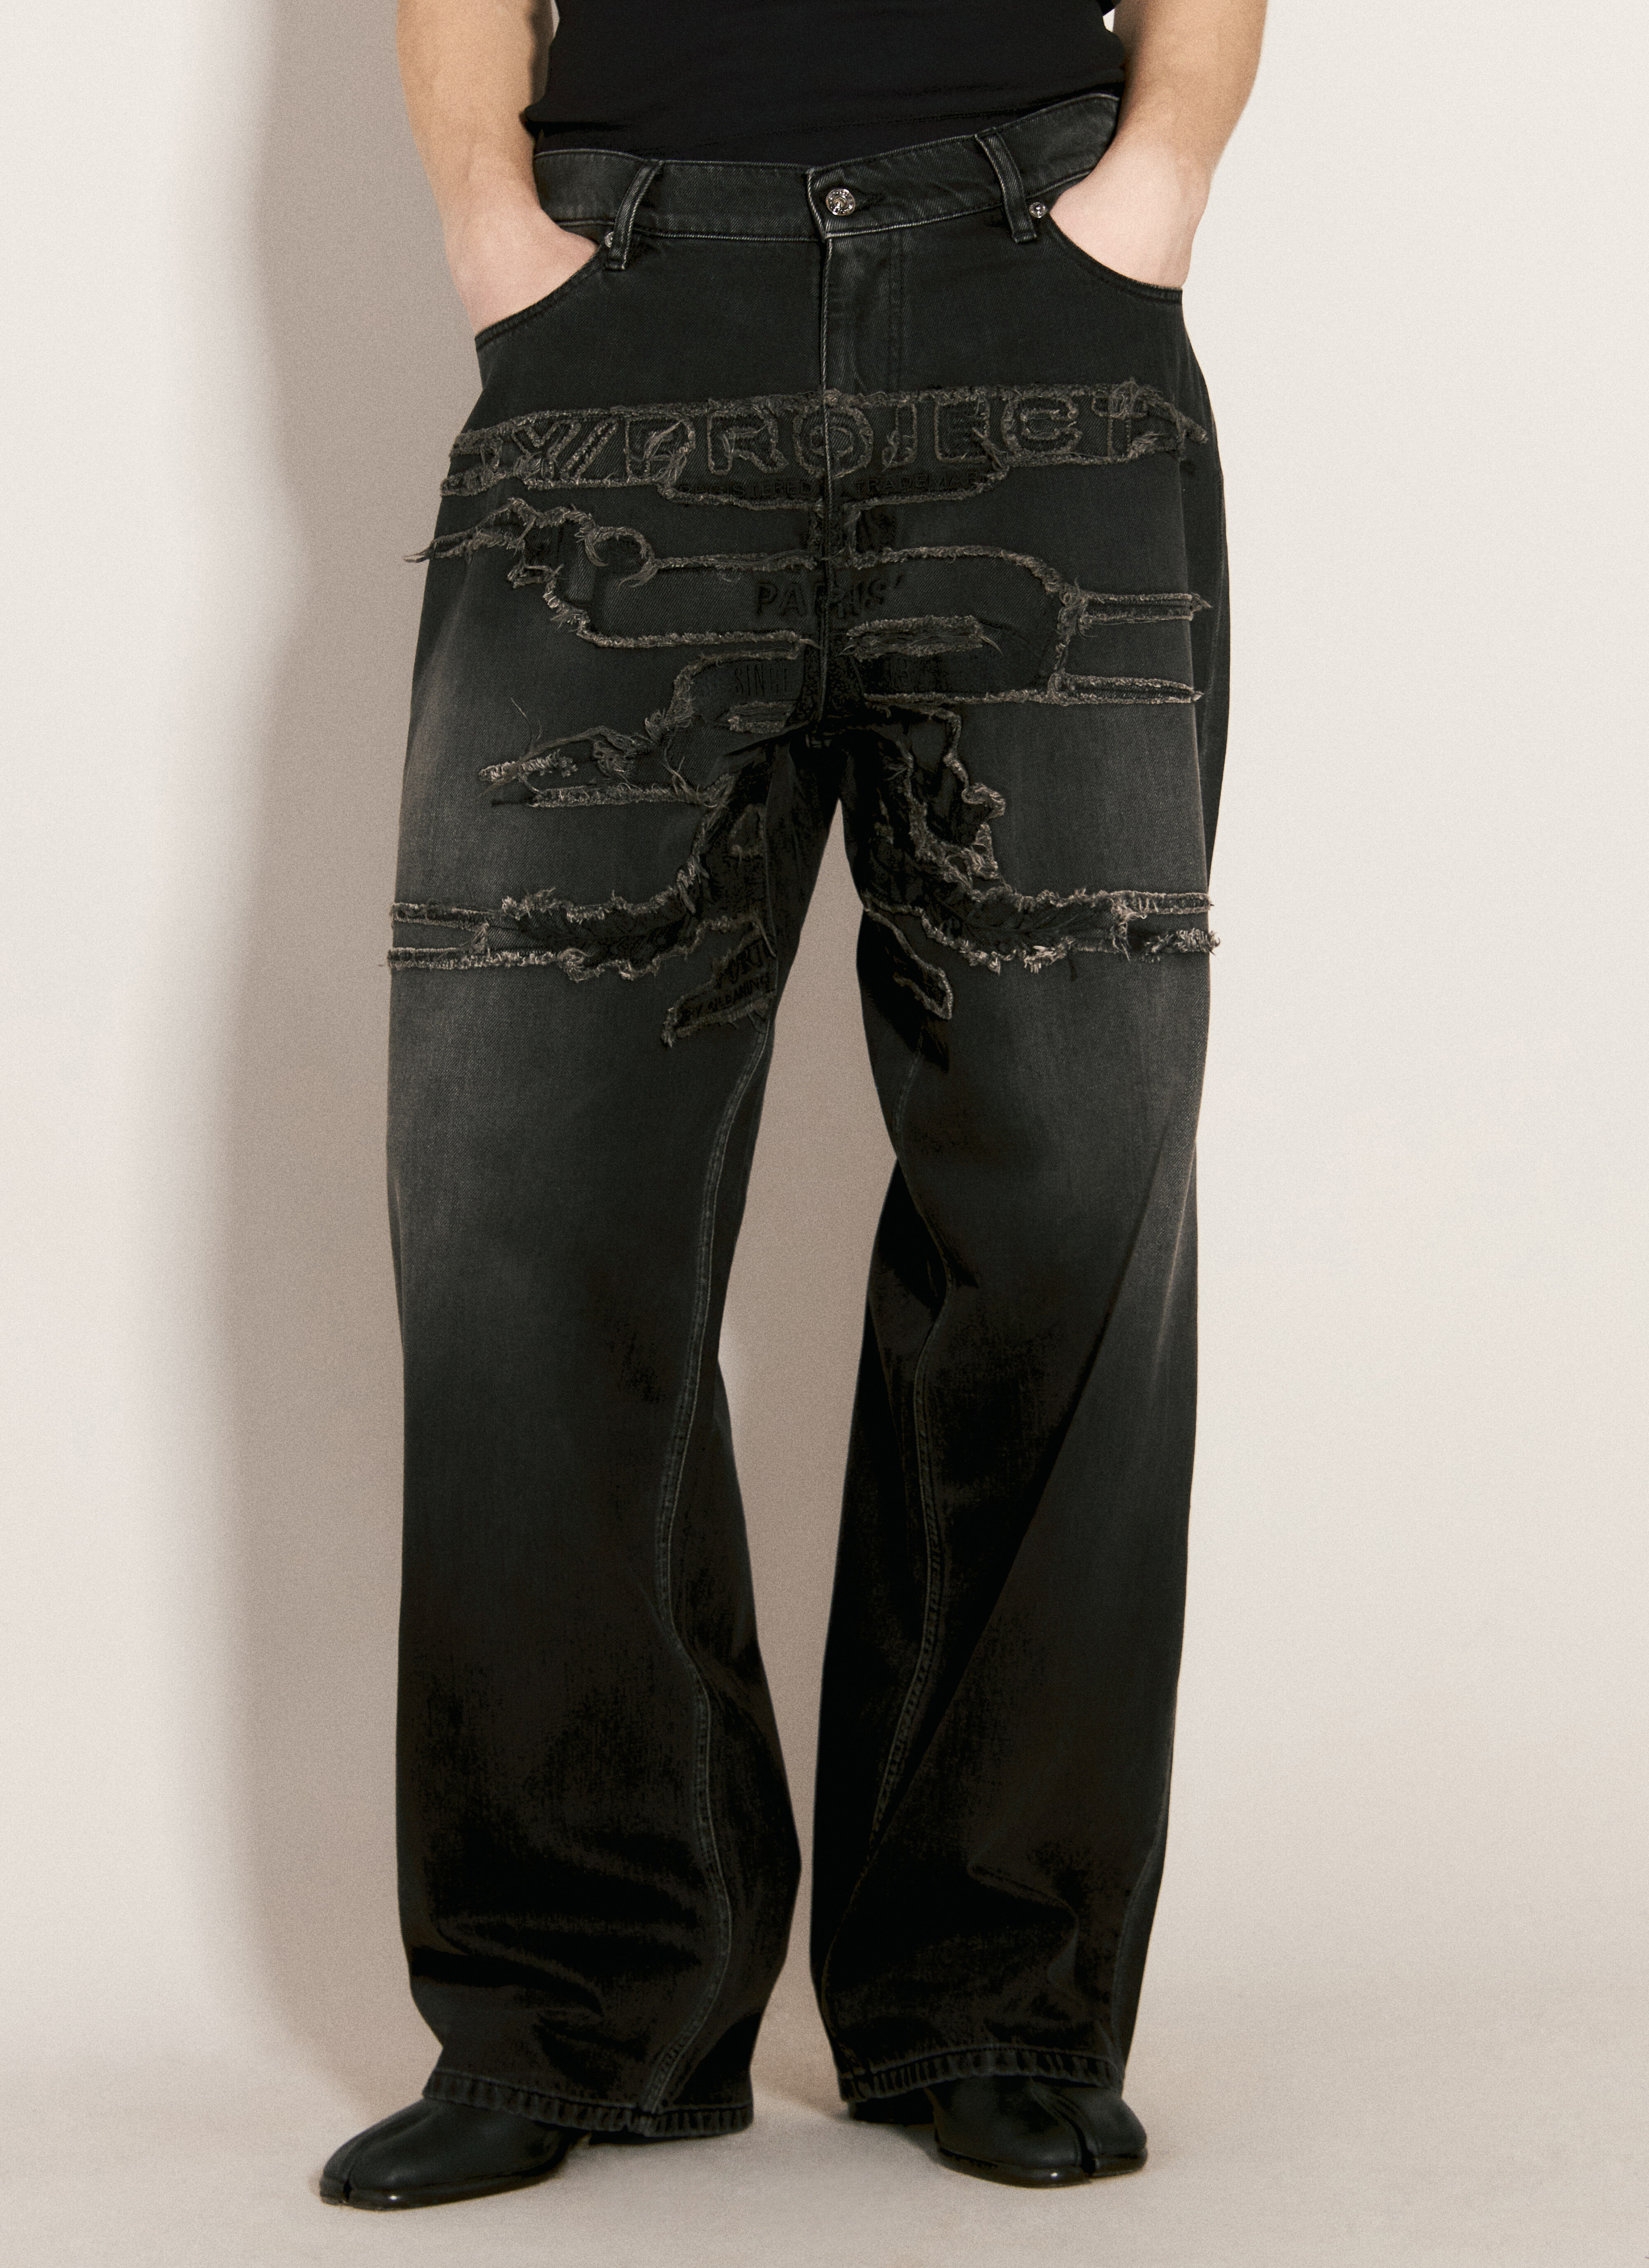 Rick Owens x Champion Paris' Best Patch Jeans Black roc0157002